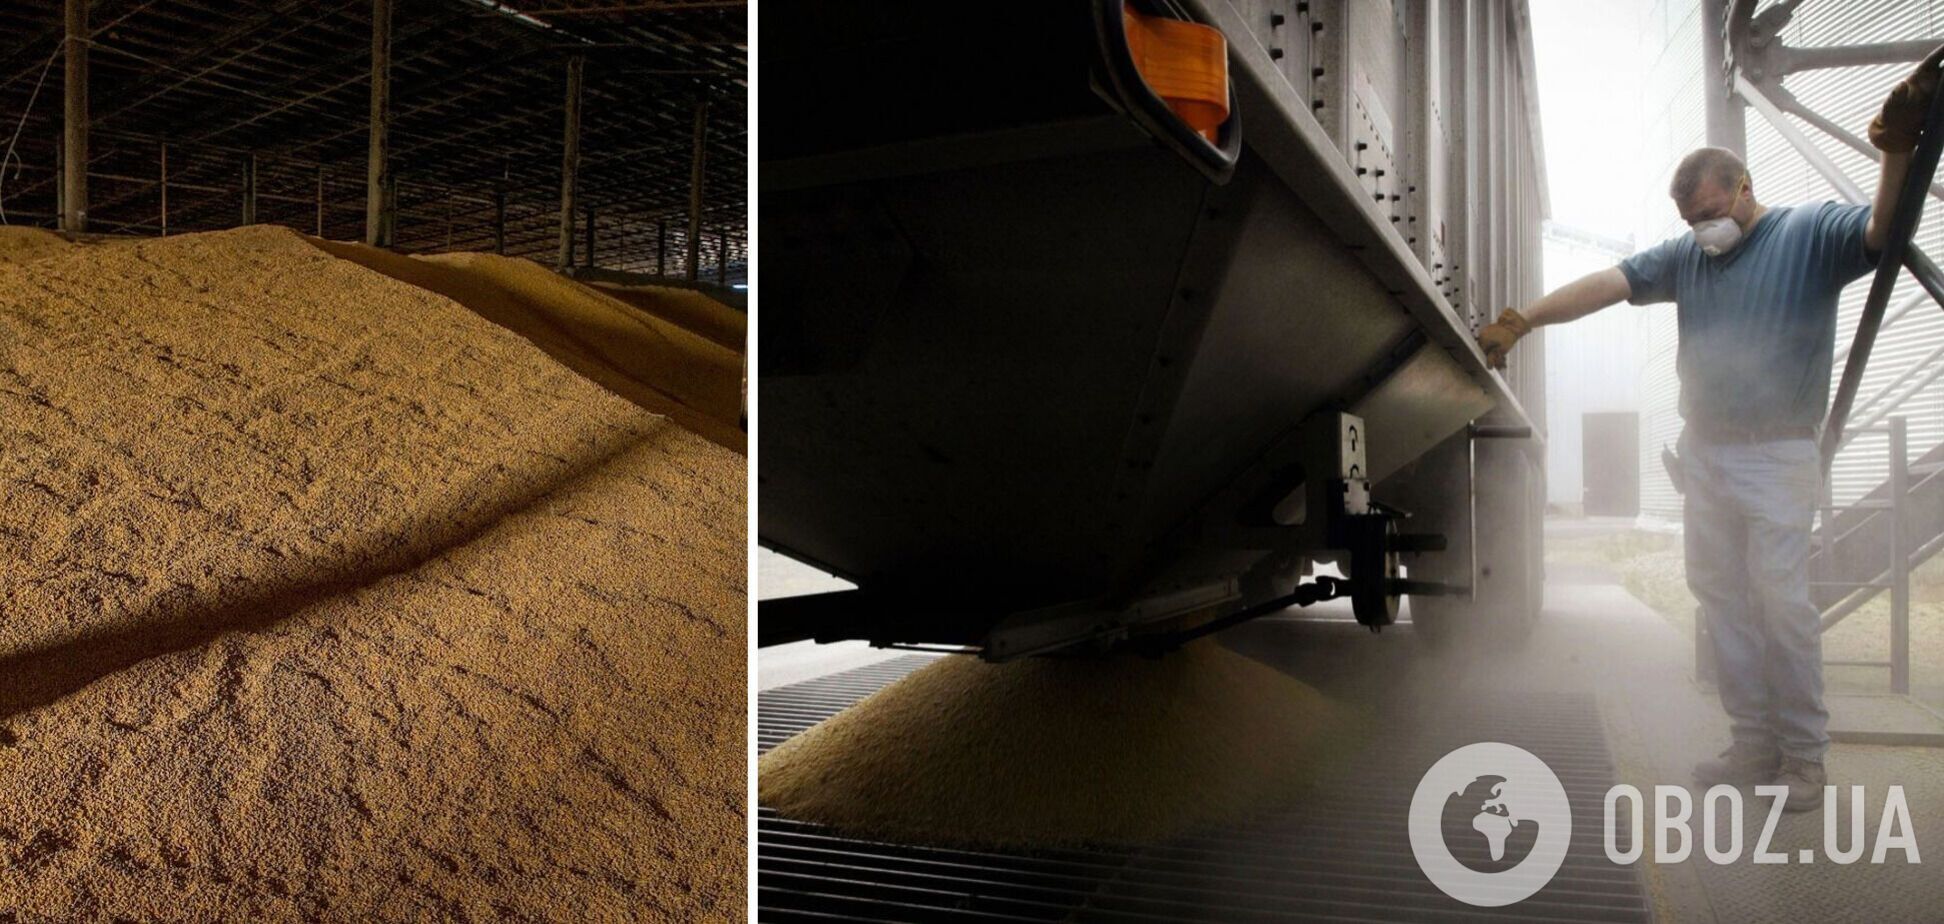 Крадене зерно тепер вивозять із України на товарняках